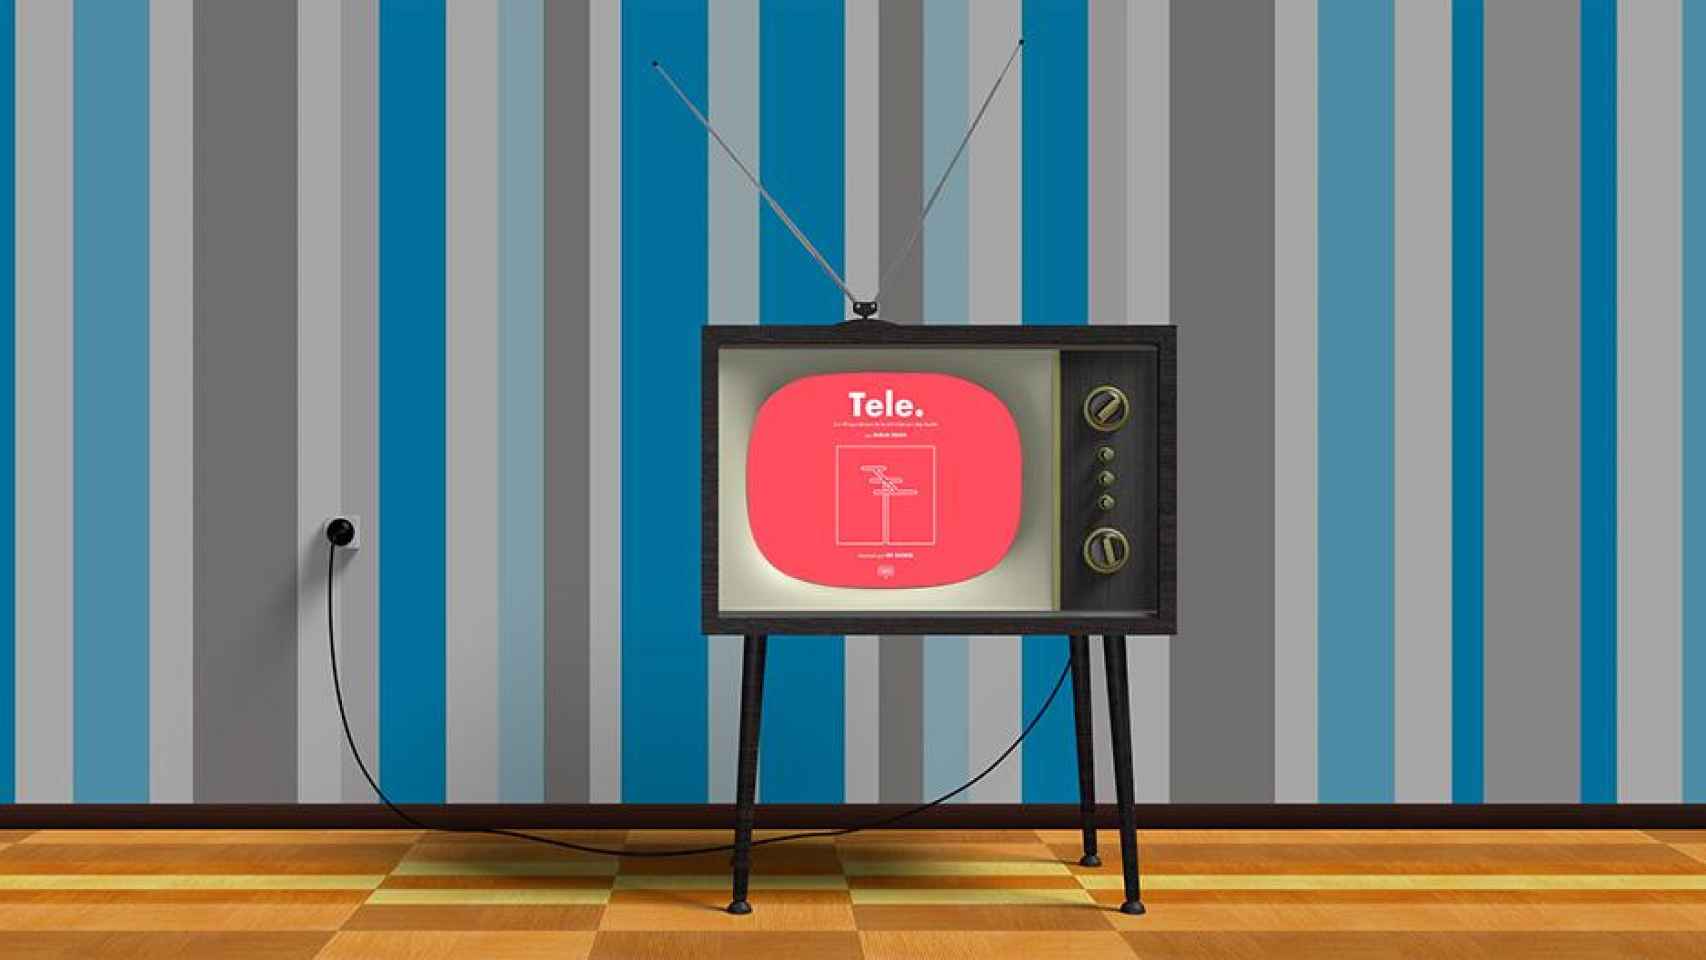 Televisión con la portada de 'Tele.' en pantalla / PIXABAY - SOMOS LIBROS